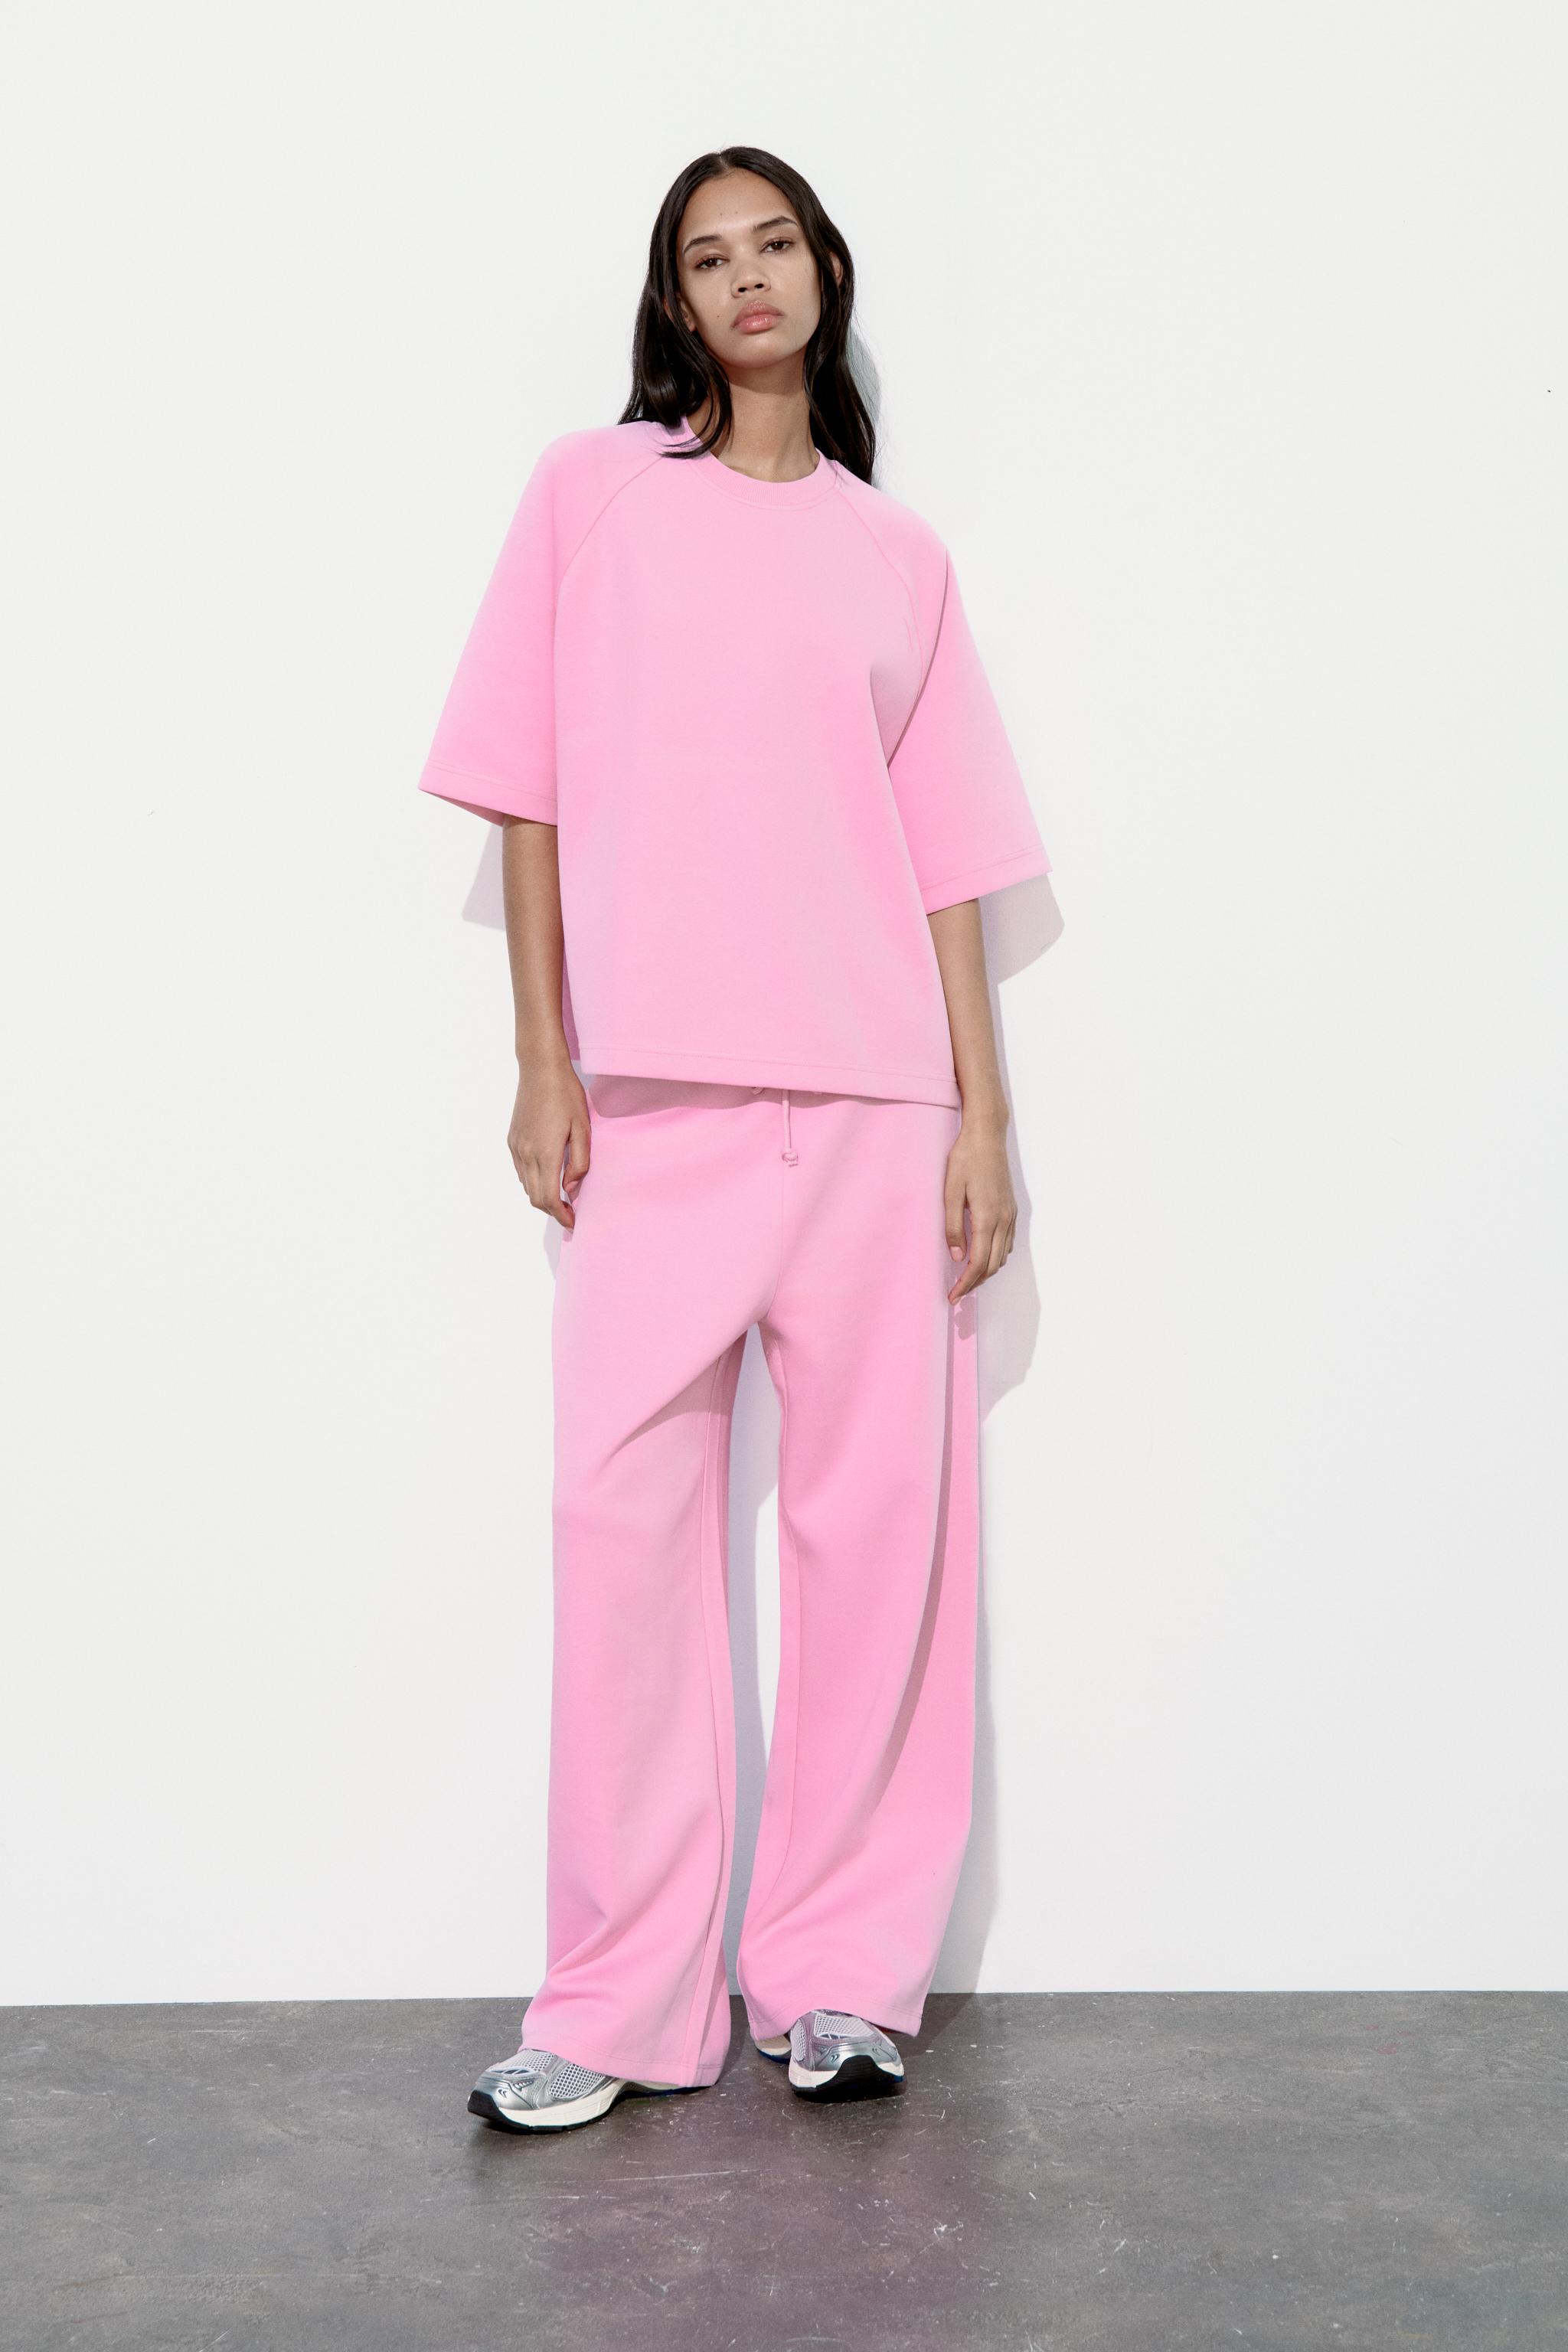 Buy Women's Pink Partywear Trousers Online